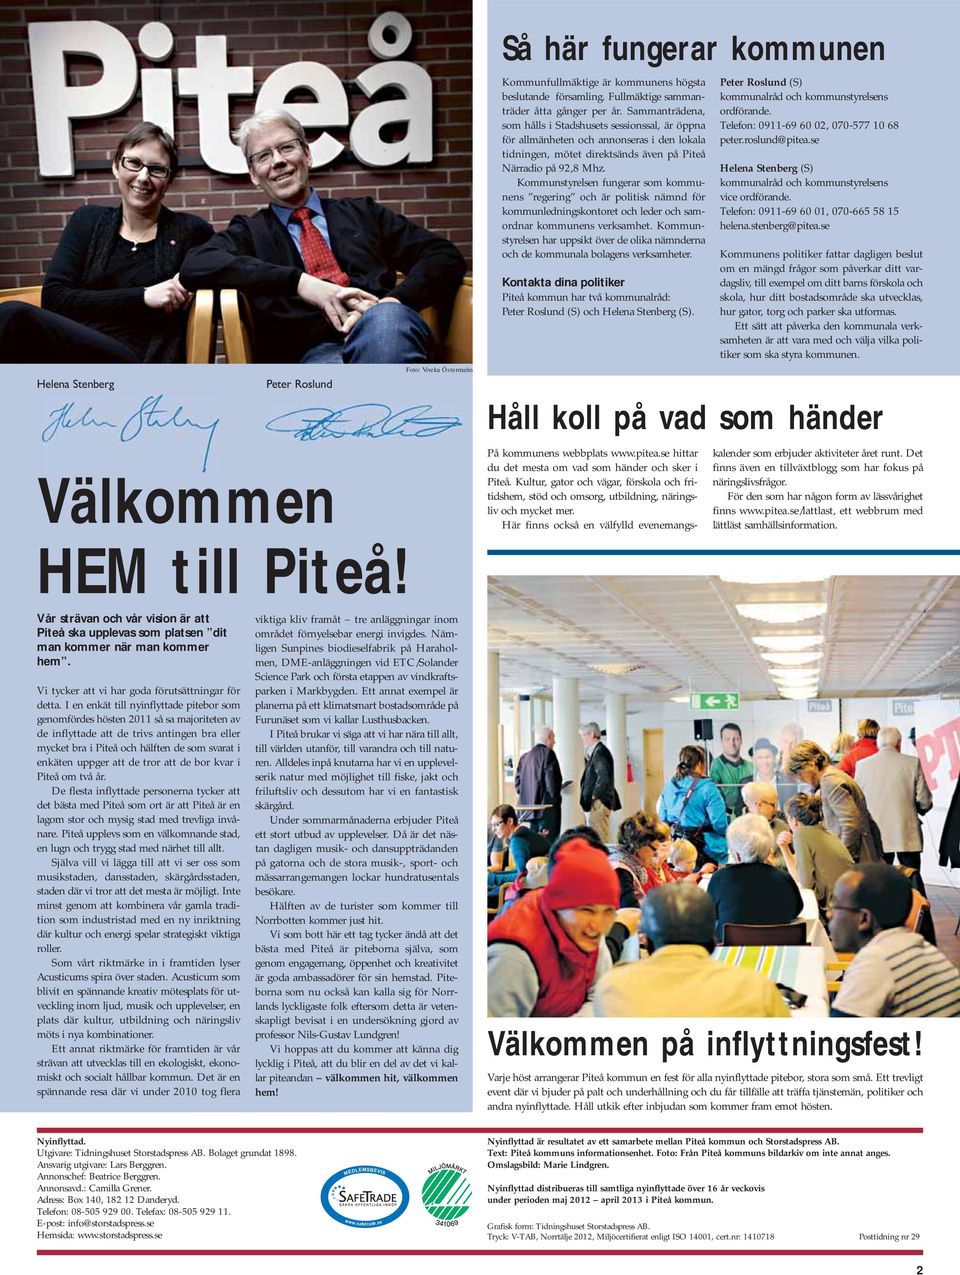 Sammanträdena, som hålls i Stadshusets sessionssal, är öppna för allmänheten och annonseras i den lokala tidningen, mötet direktsänds även på Piteå Närradio på 92,8 Mhz.